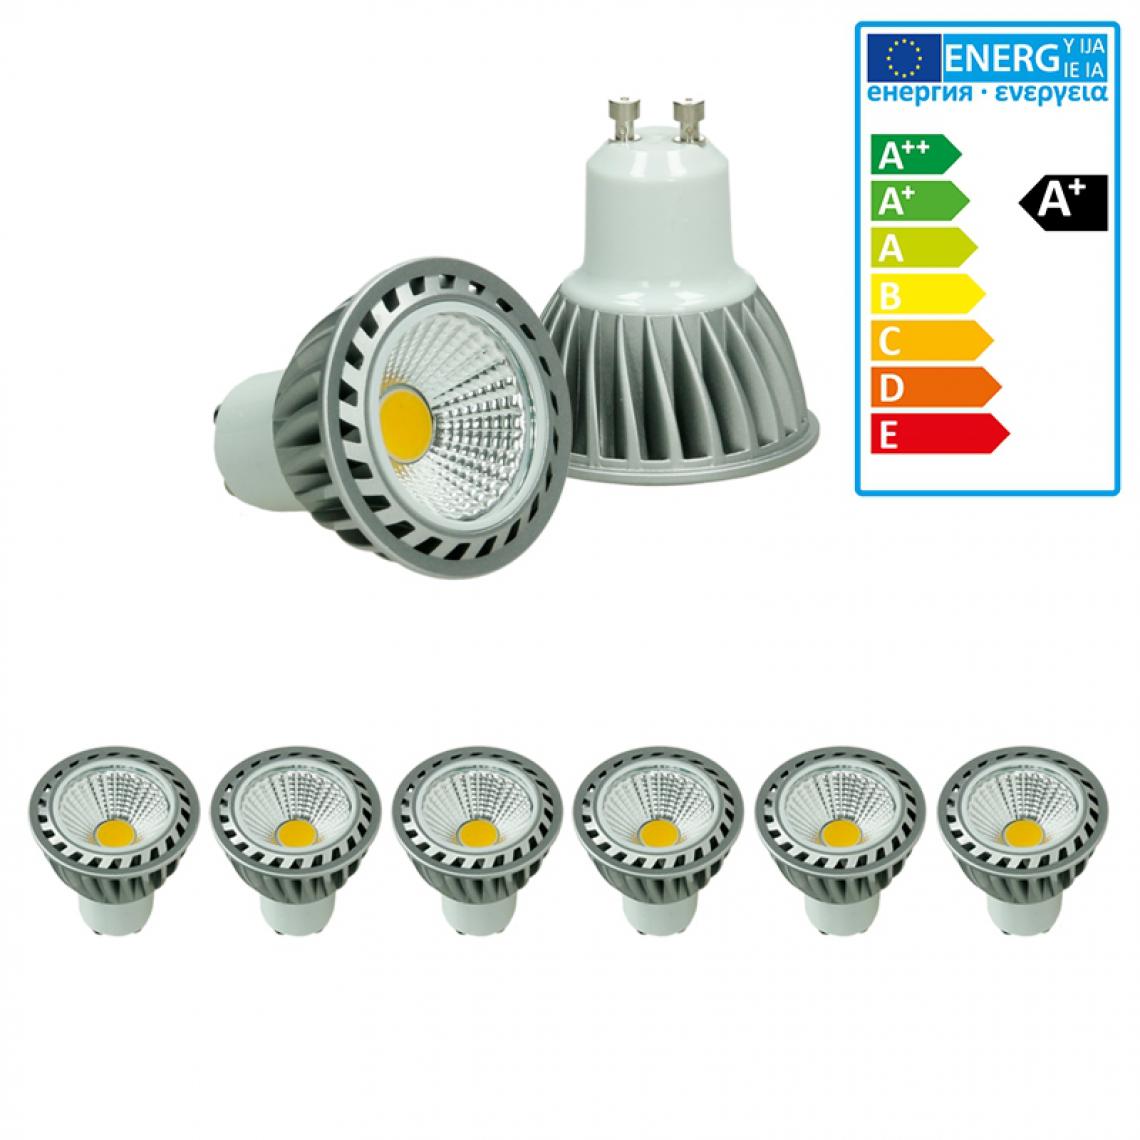 Ecd Germany - ECD Germany 6-Pack 4W GU10 LED Spot Remplace 20W Halogène 220-240V 60 ° Angle de faisceau 243 Lumen 2800K Chaud Blanc Ampoule Lampe Spotlight Ampoule - Ampoules LED